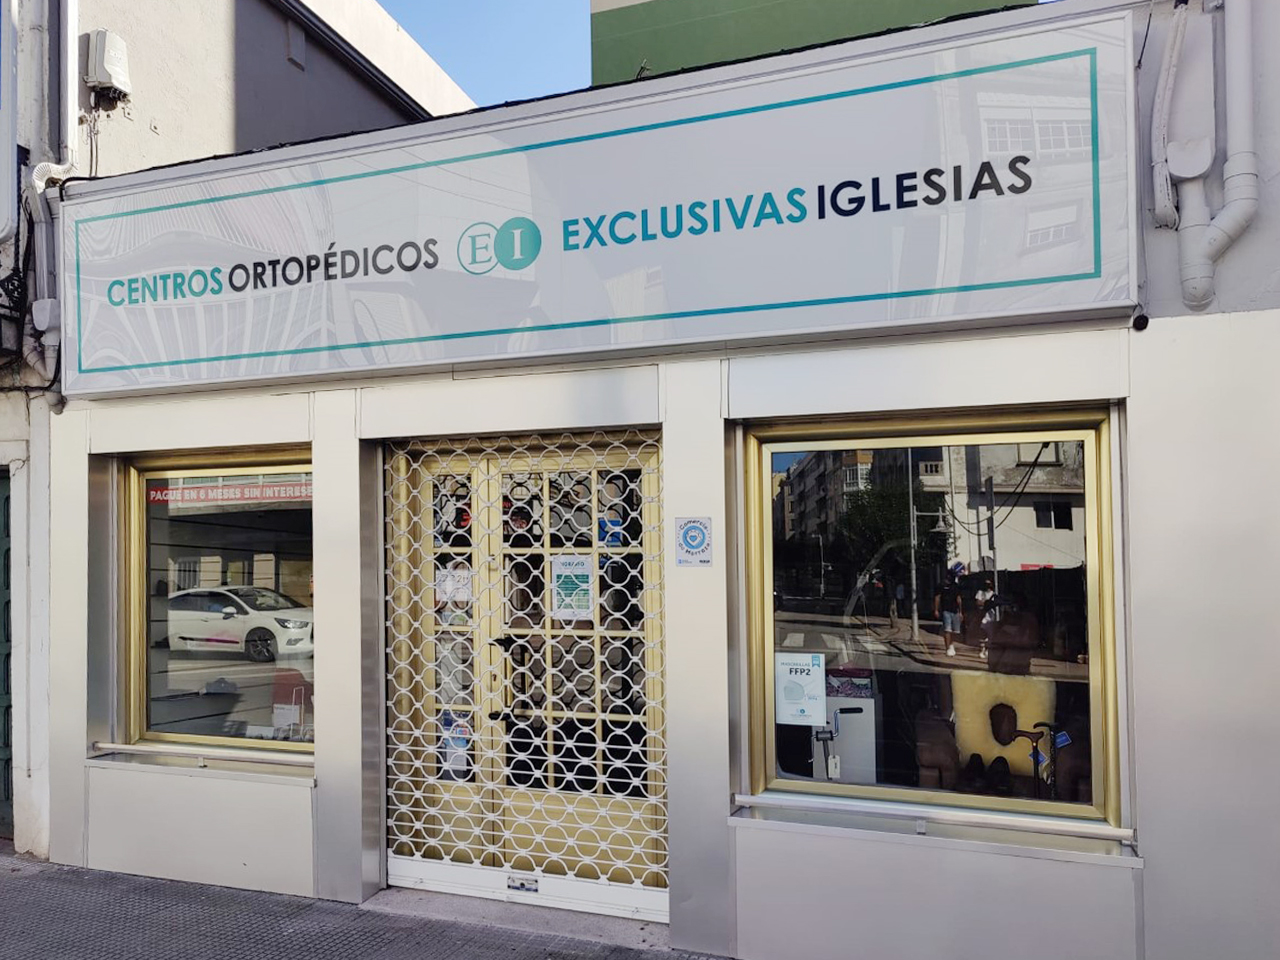 Centro ortopédico Exclusivas Iglesias c/ Mendez Nuñez Cangas